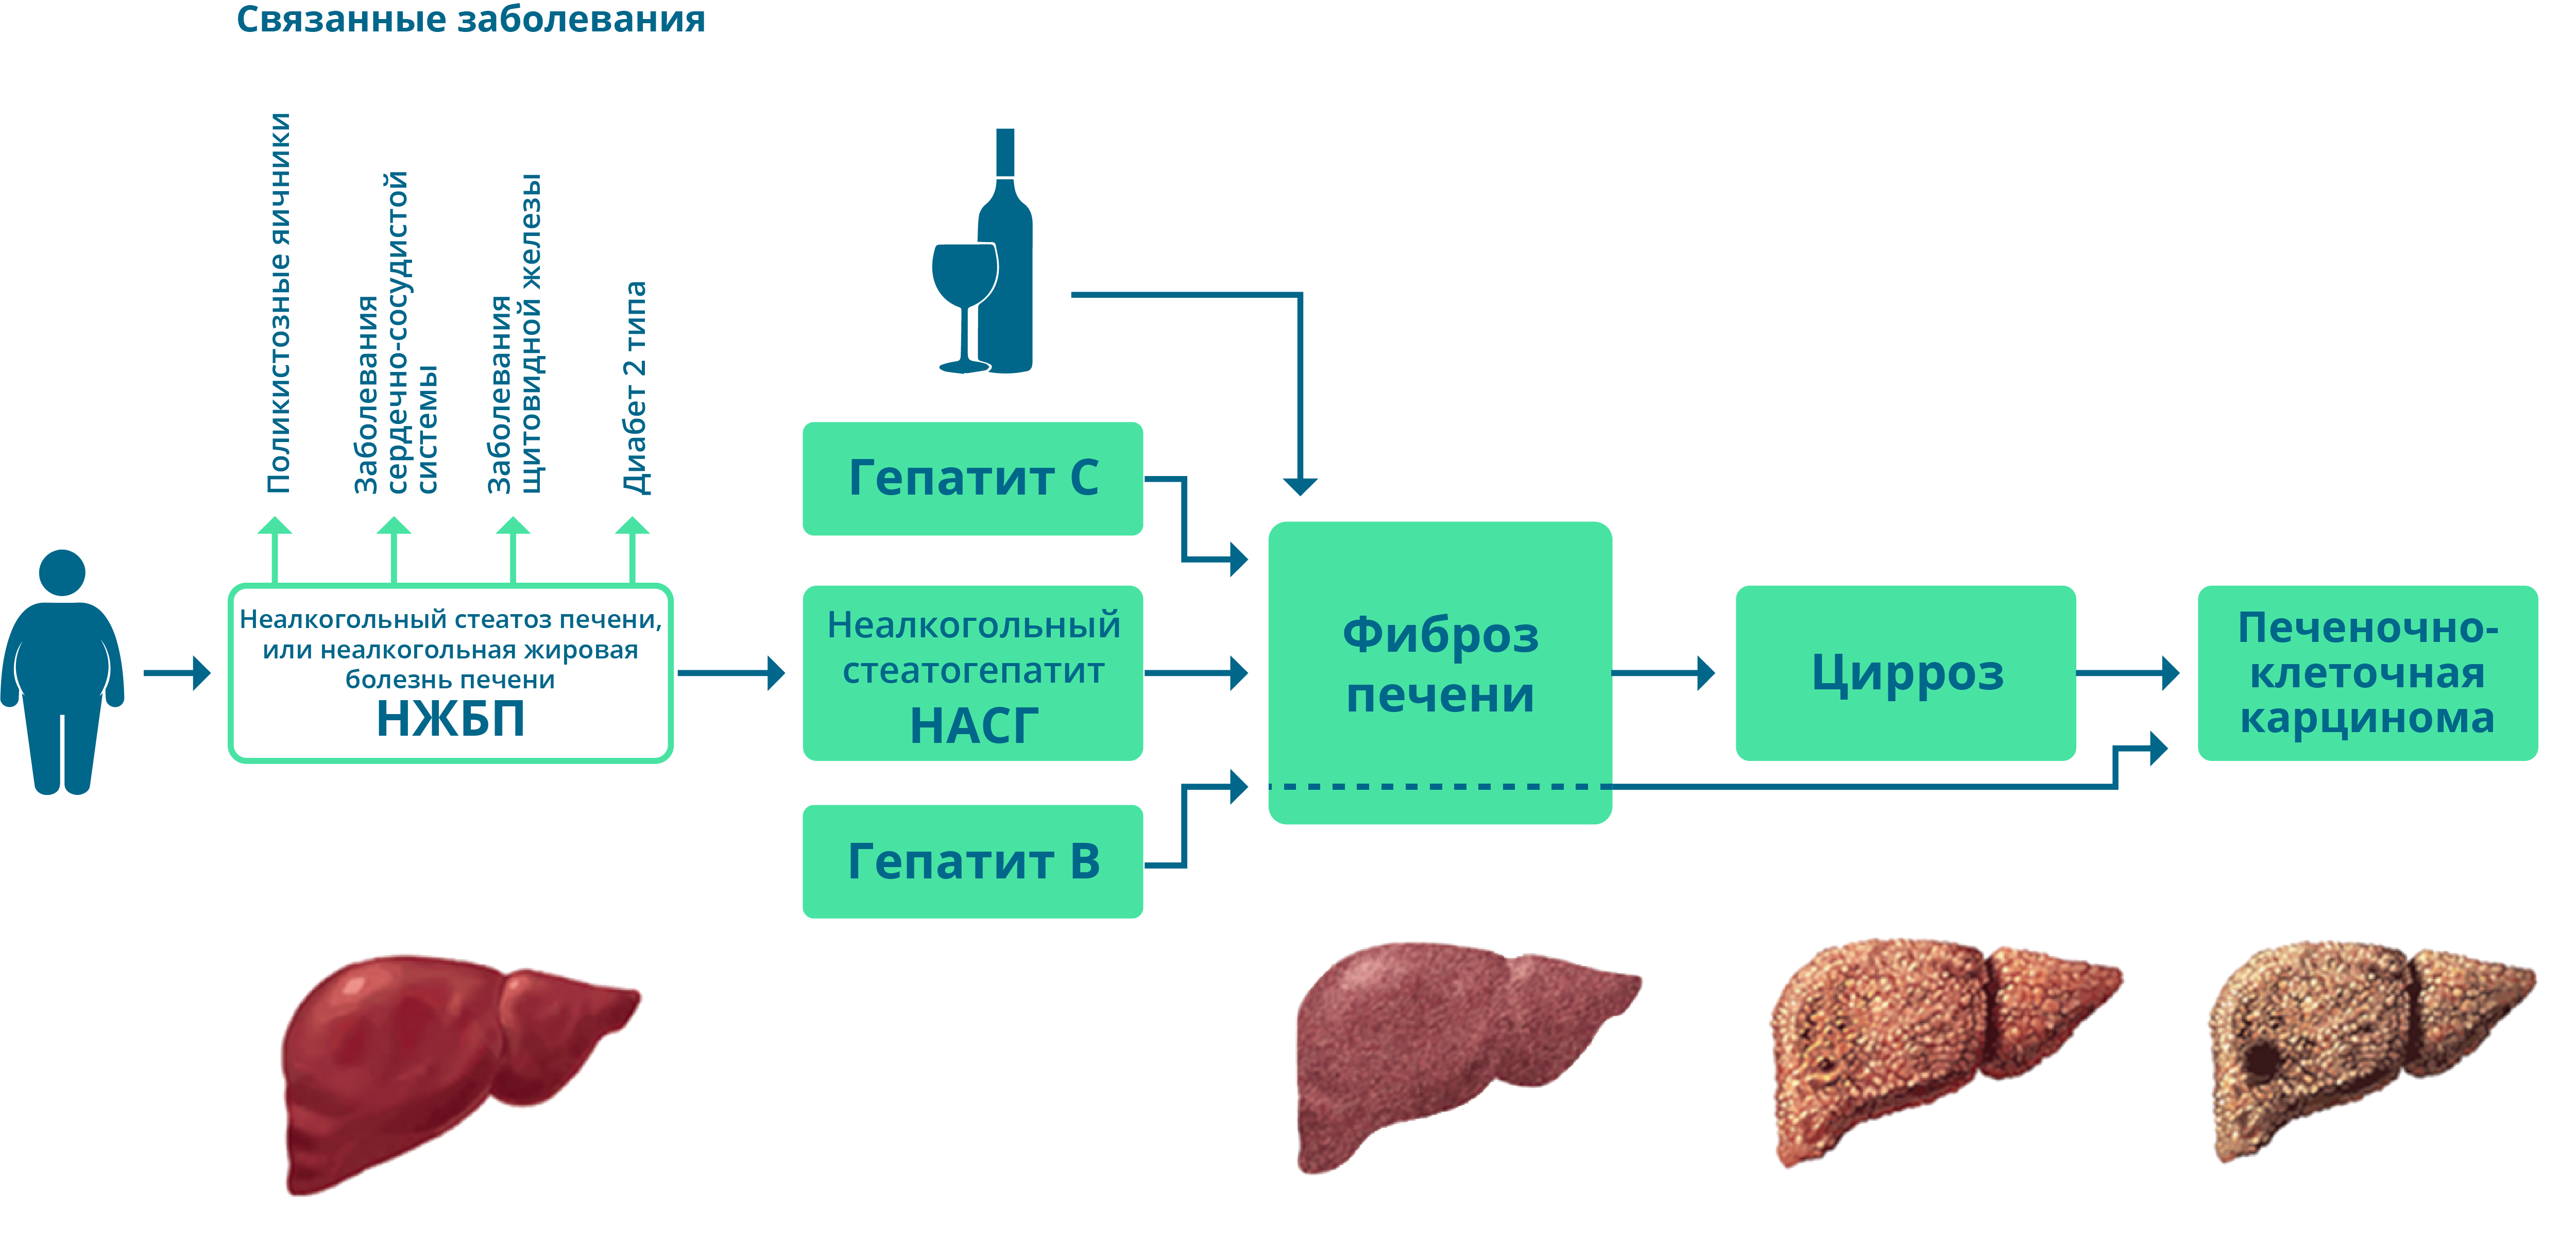 Признаки стеатоза печени. Схема лекарств при стеатозе печени. Стадии стеатоза печени. Болезнь печени стеатогепатоз.